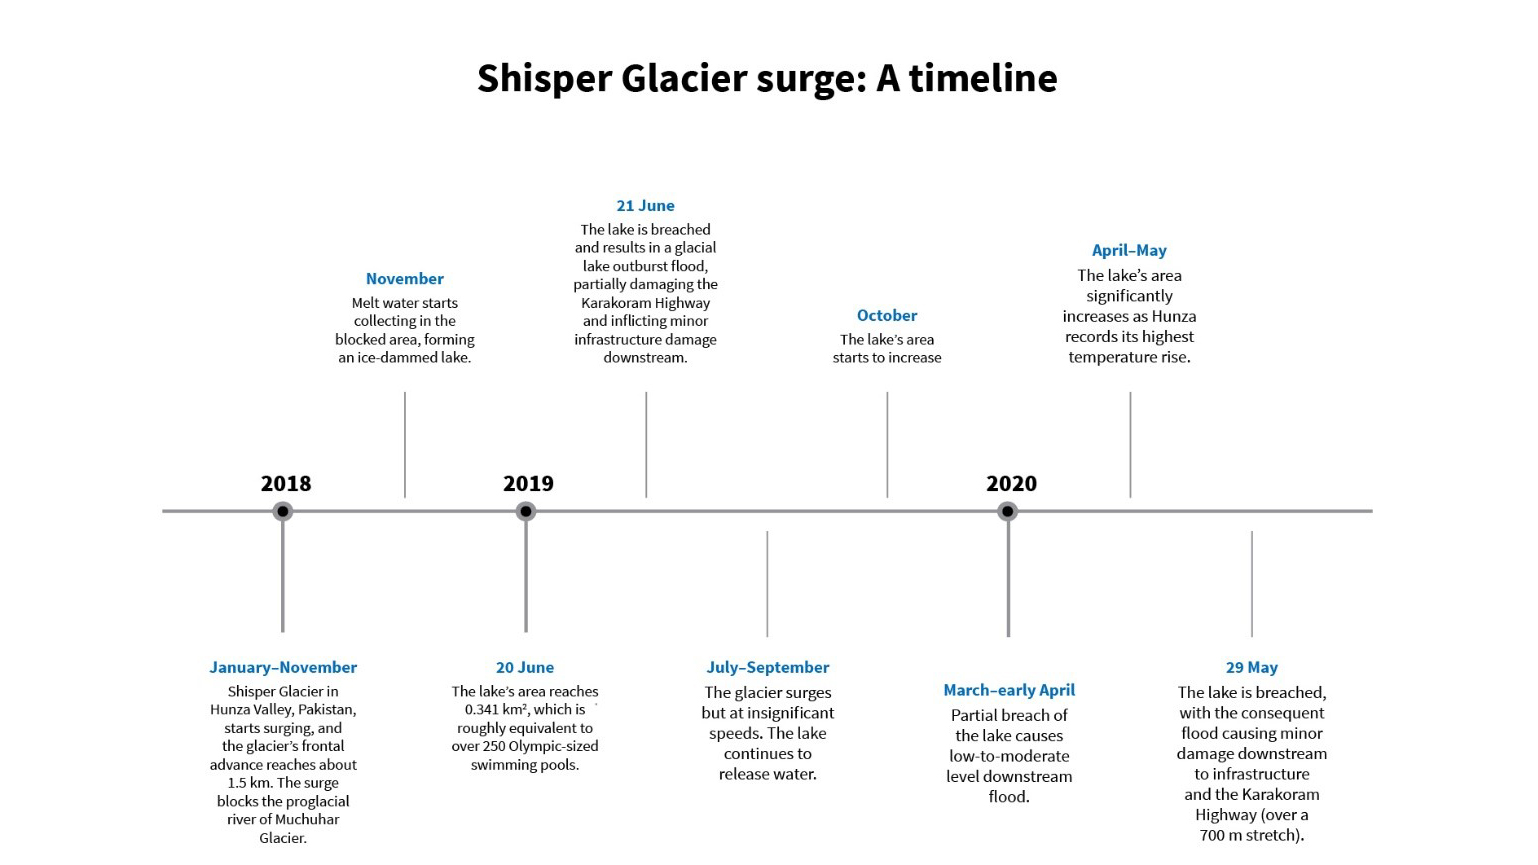 Shisper glacier surge: a timeline